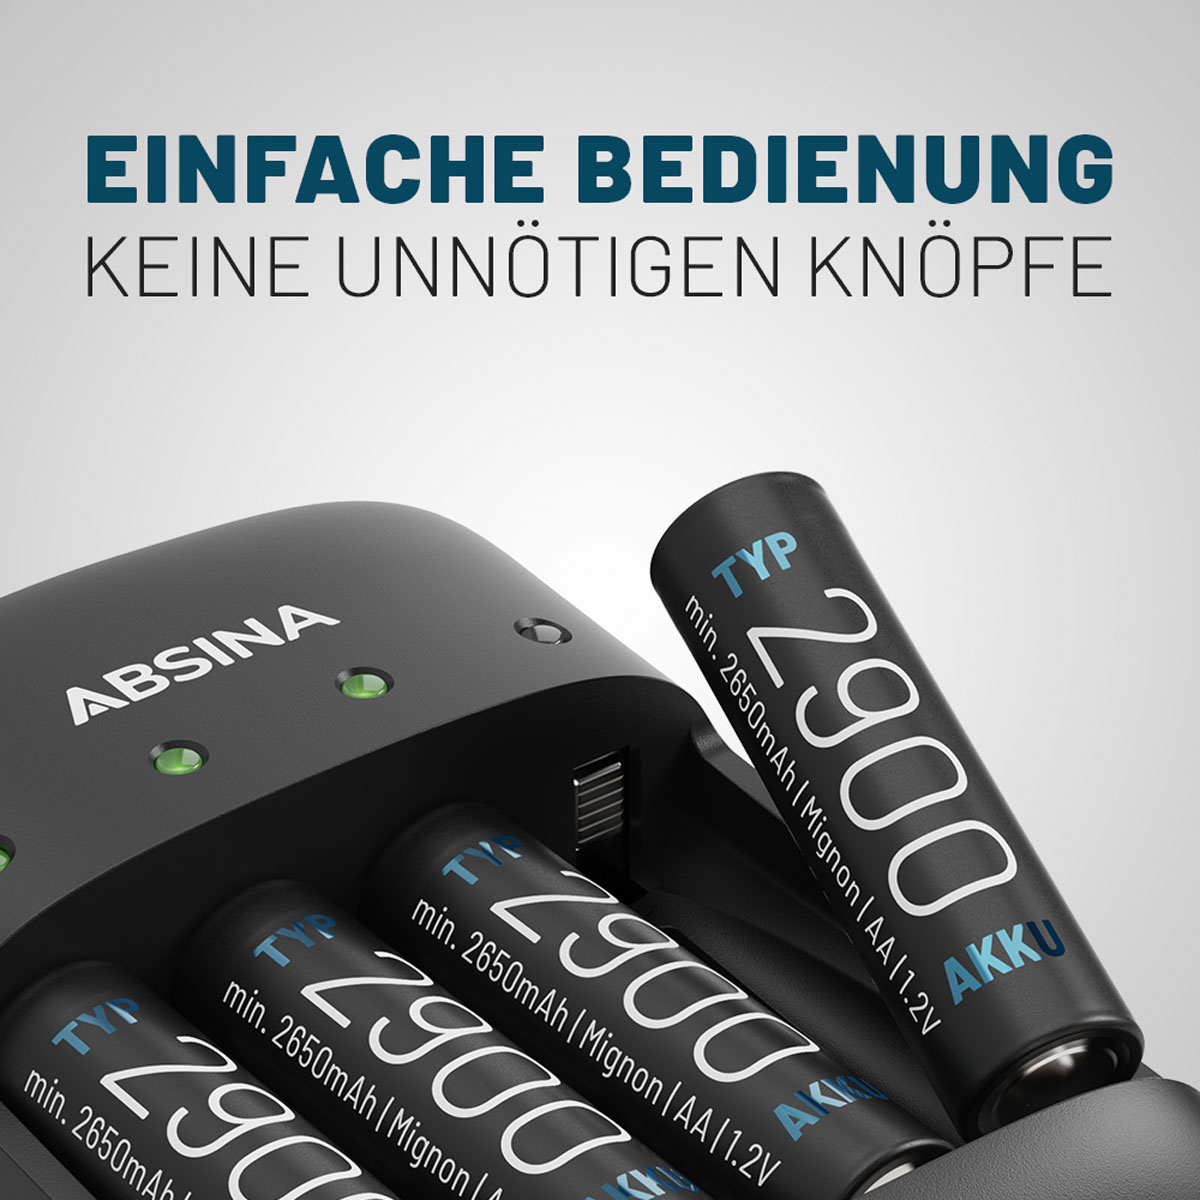 ABSINA Ladegerät X4 für 4x AAA Akkus Ladegerät Universal, inkl. Typ 9V Micro schwarz & AA, 1150 AAA 